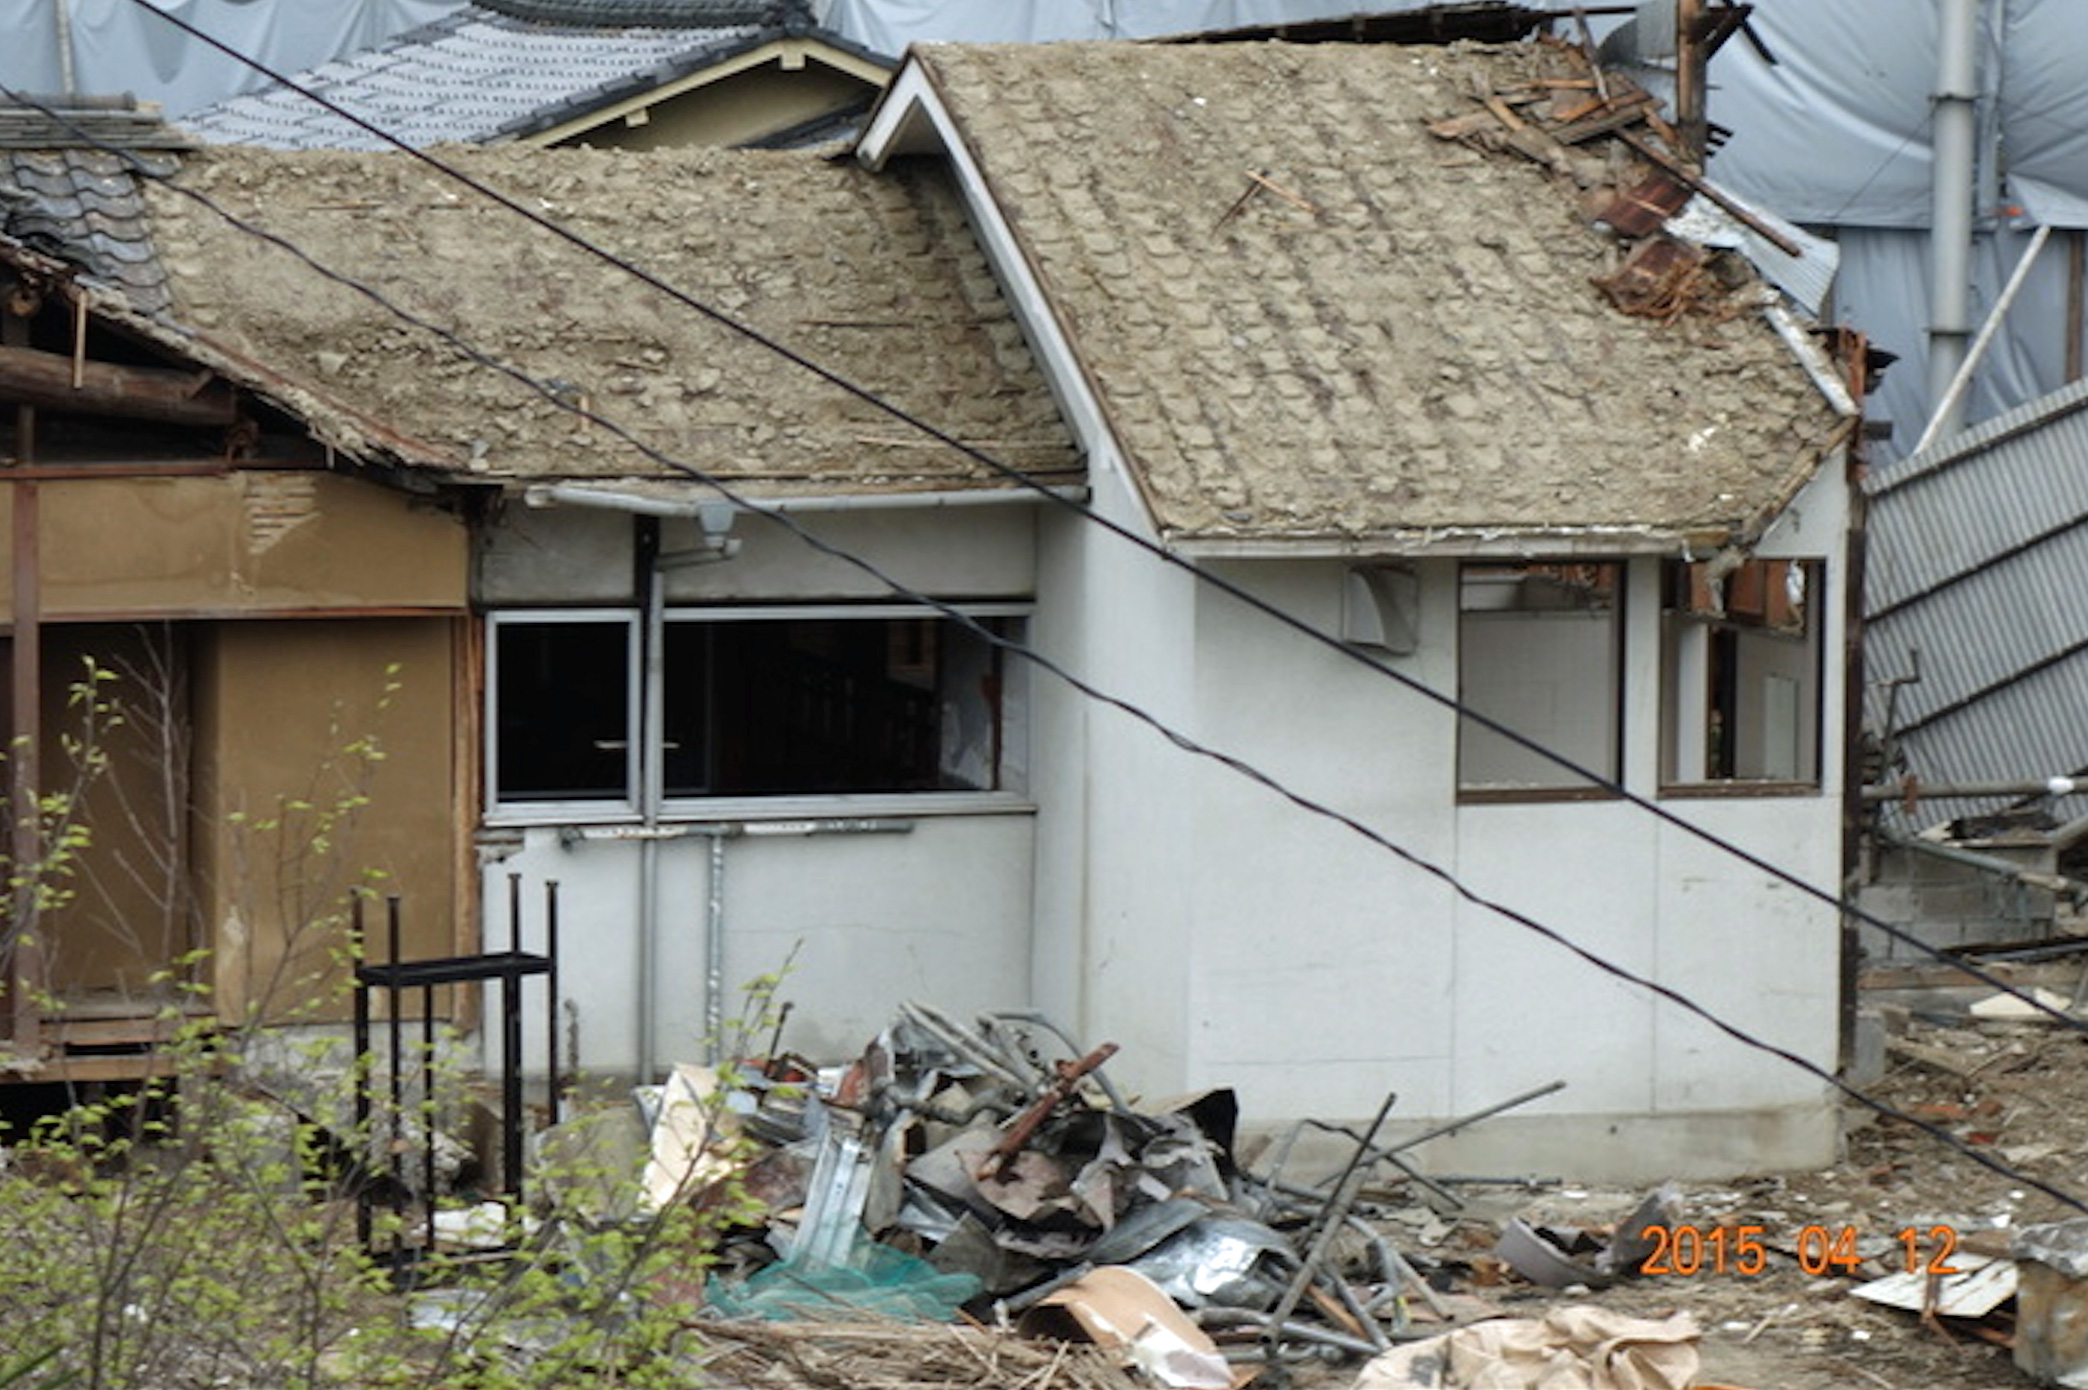 Kyoto le 12 avril 2015 : démolition à l’Hôpital Sanseï